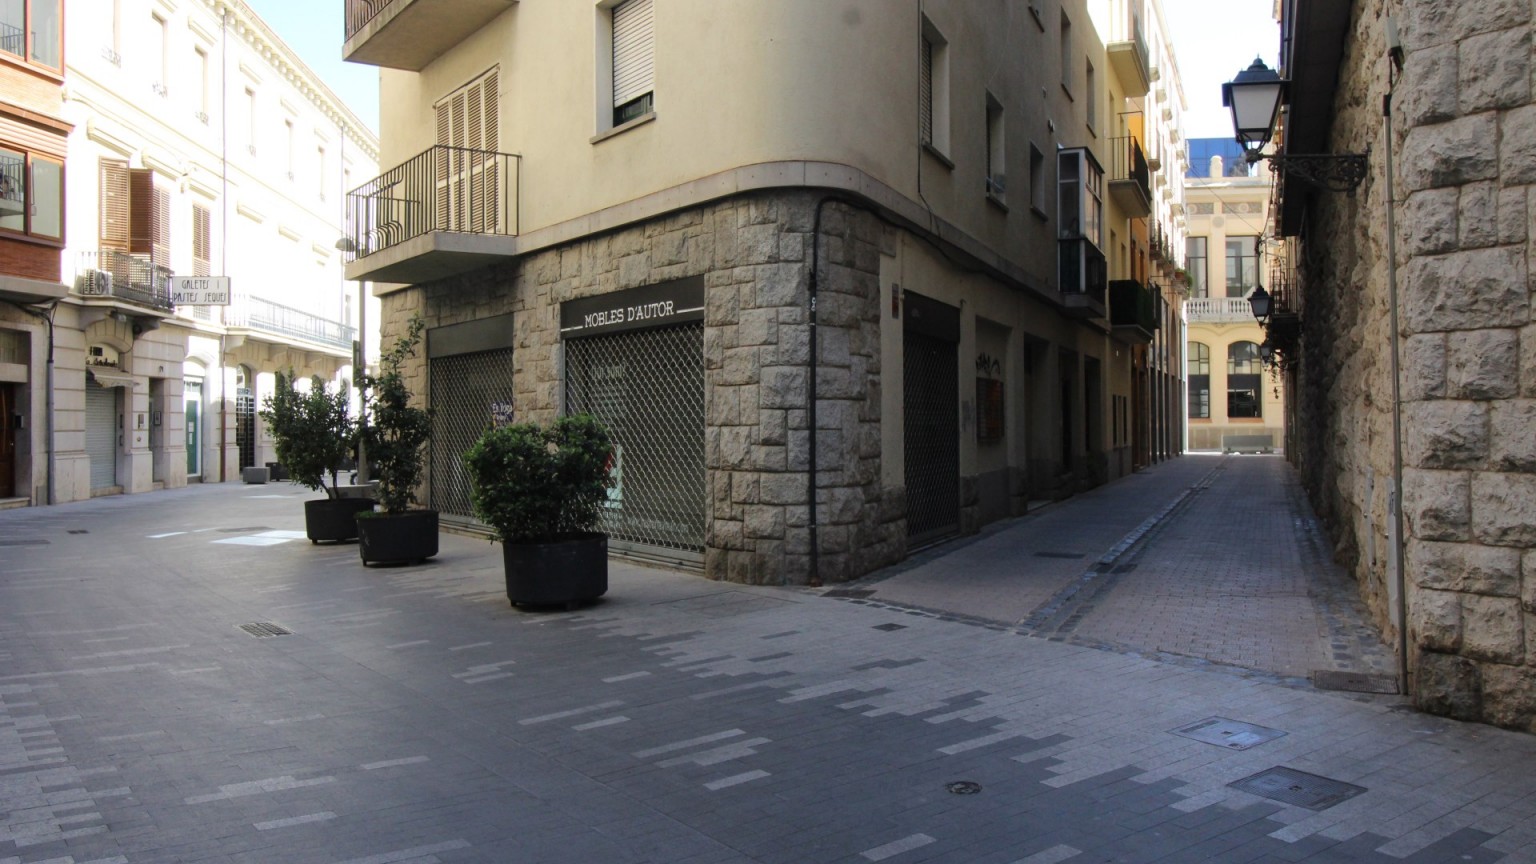 Local à louer, au centre de Figueres. 